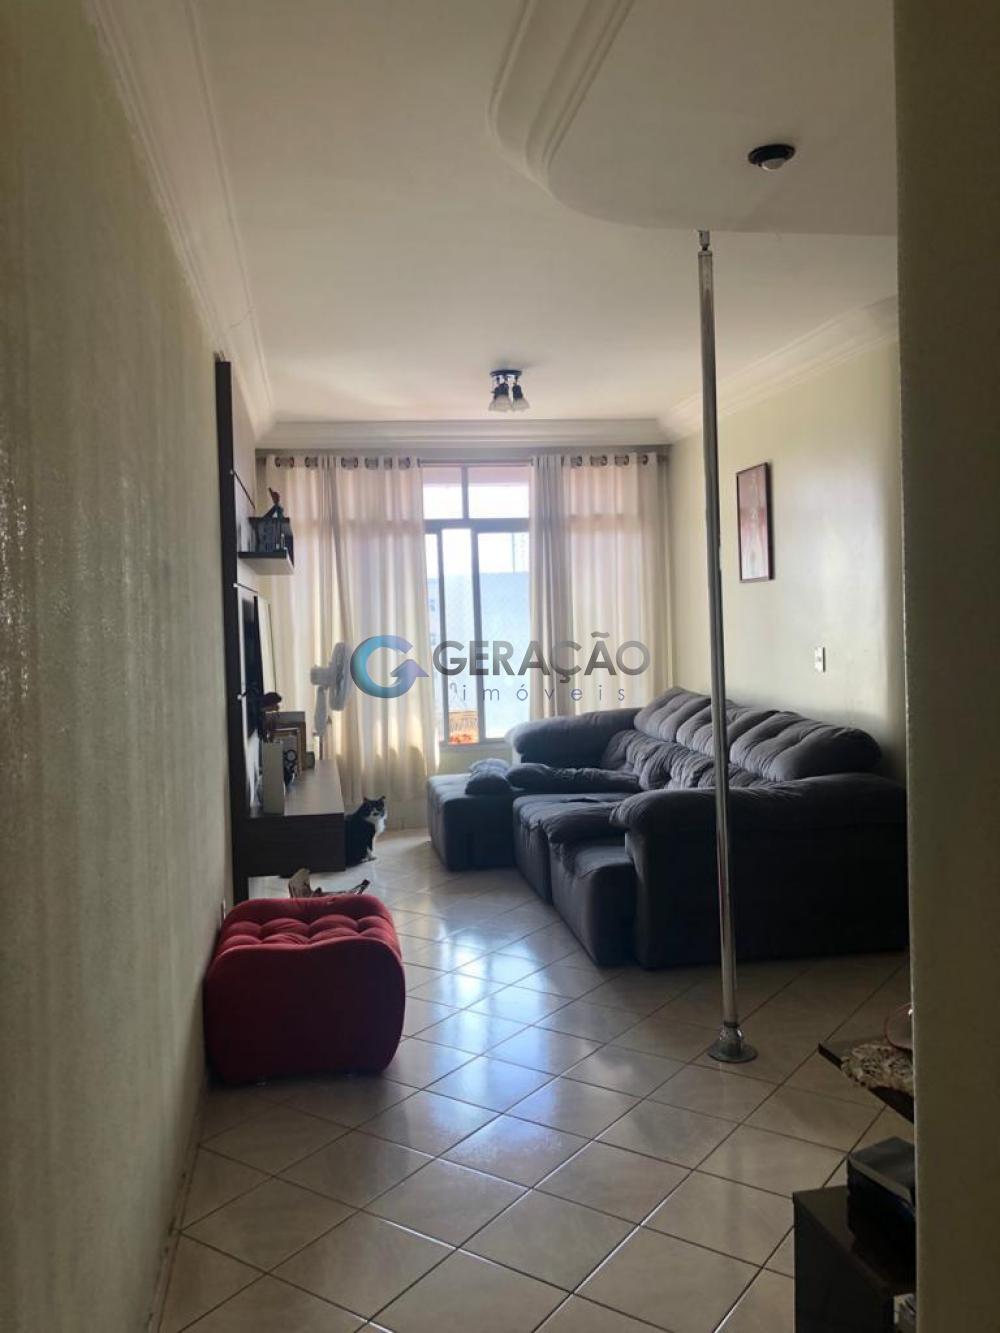 Comprar Apartamento / Padrão em São José dos Campos R$ 375.000,00 - Foto 4